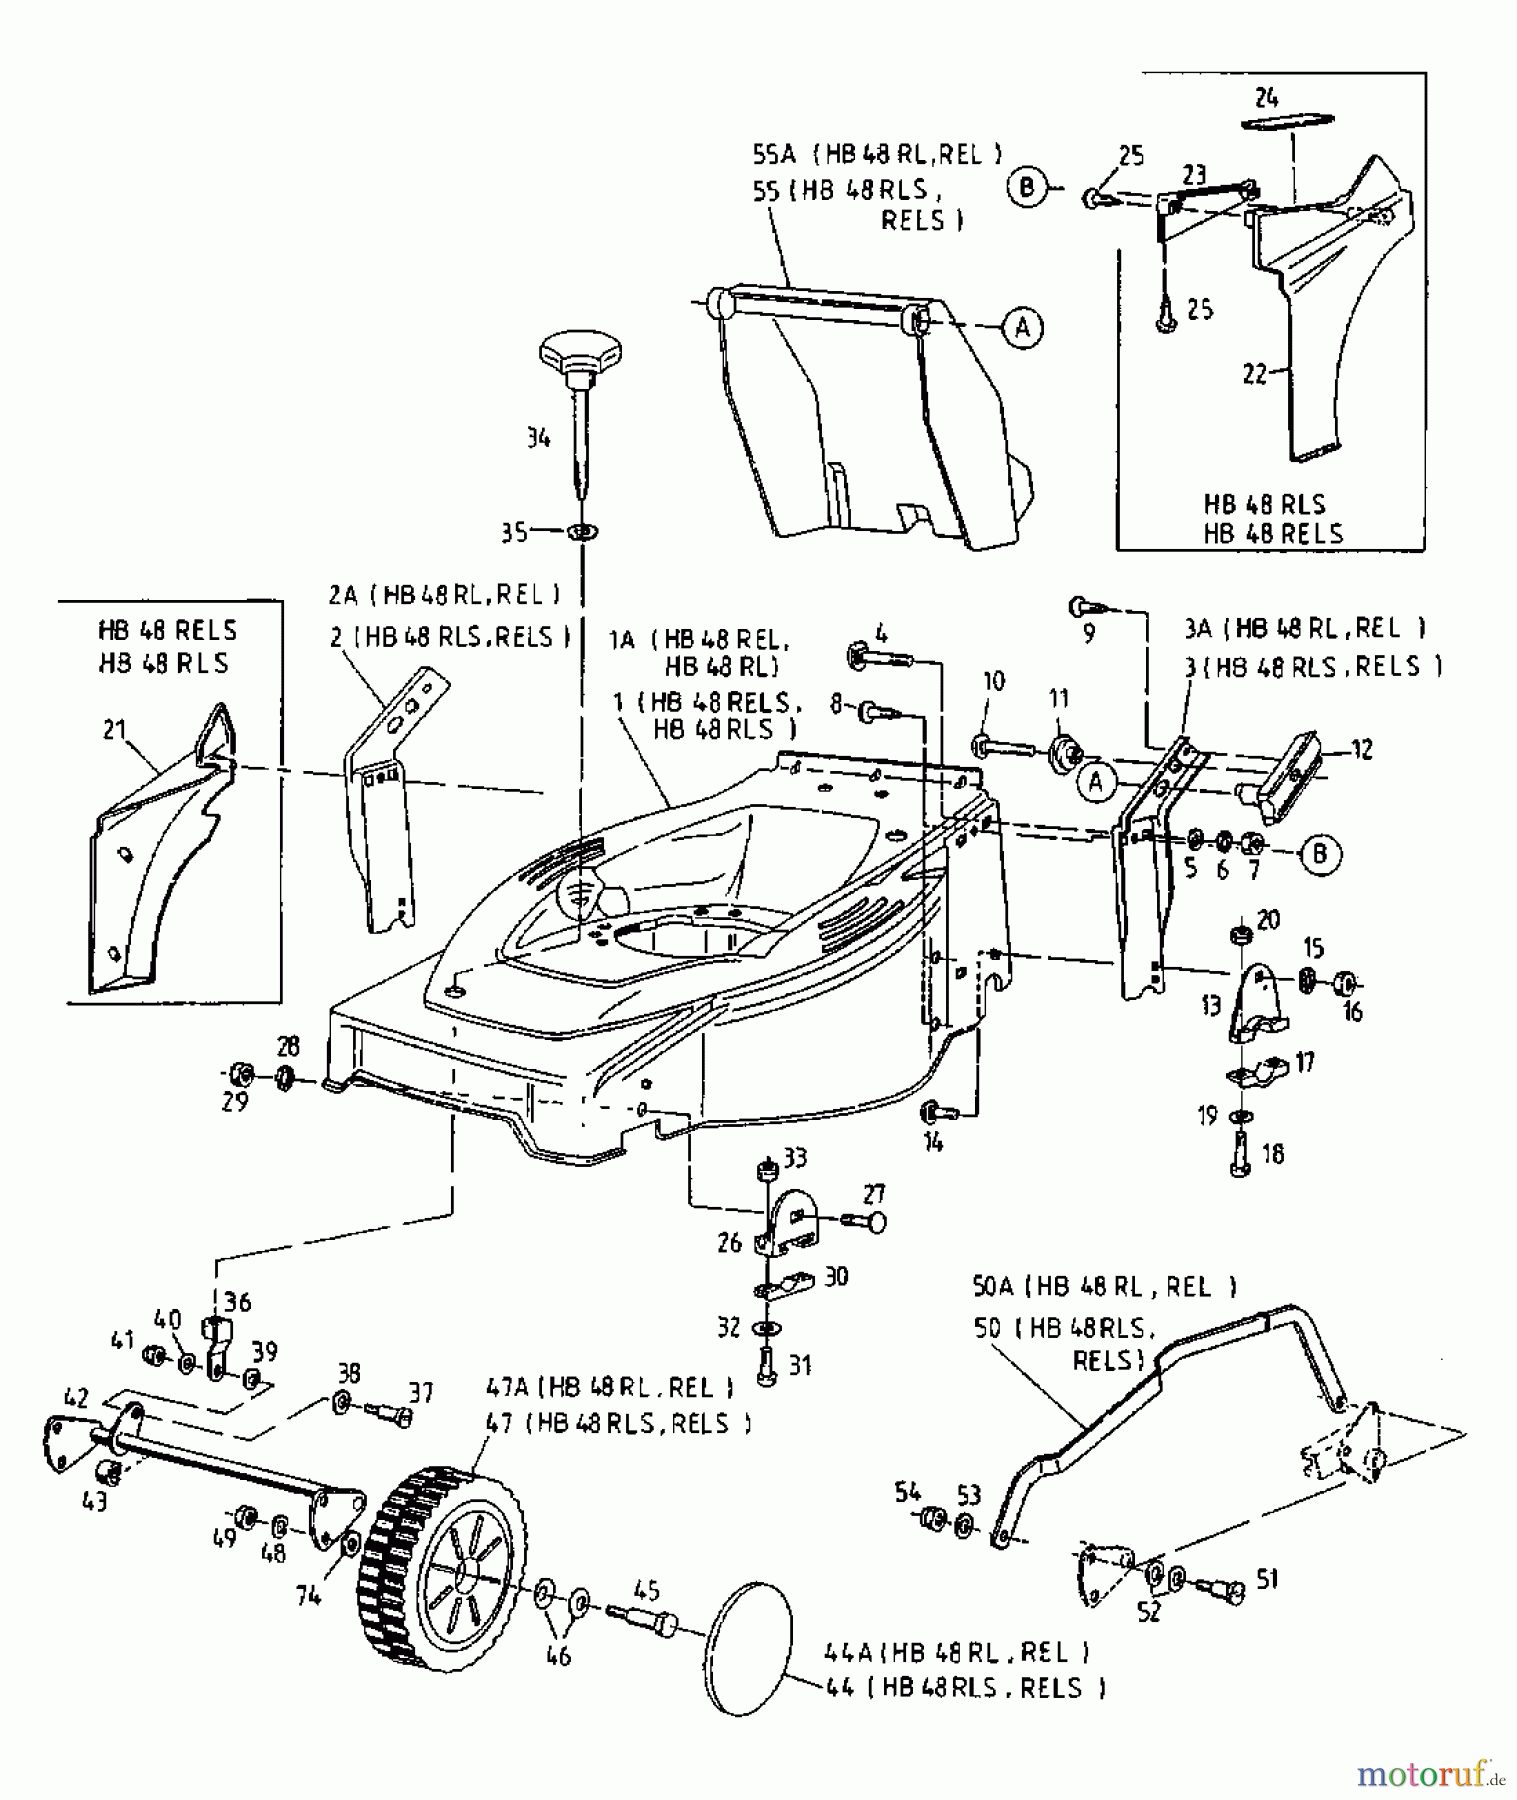  Gutbrod Petrol mower self propelled HB 48 REL 12CET58U604  (2000) Basic machine